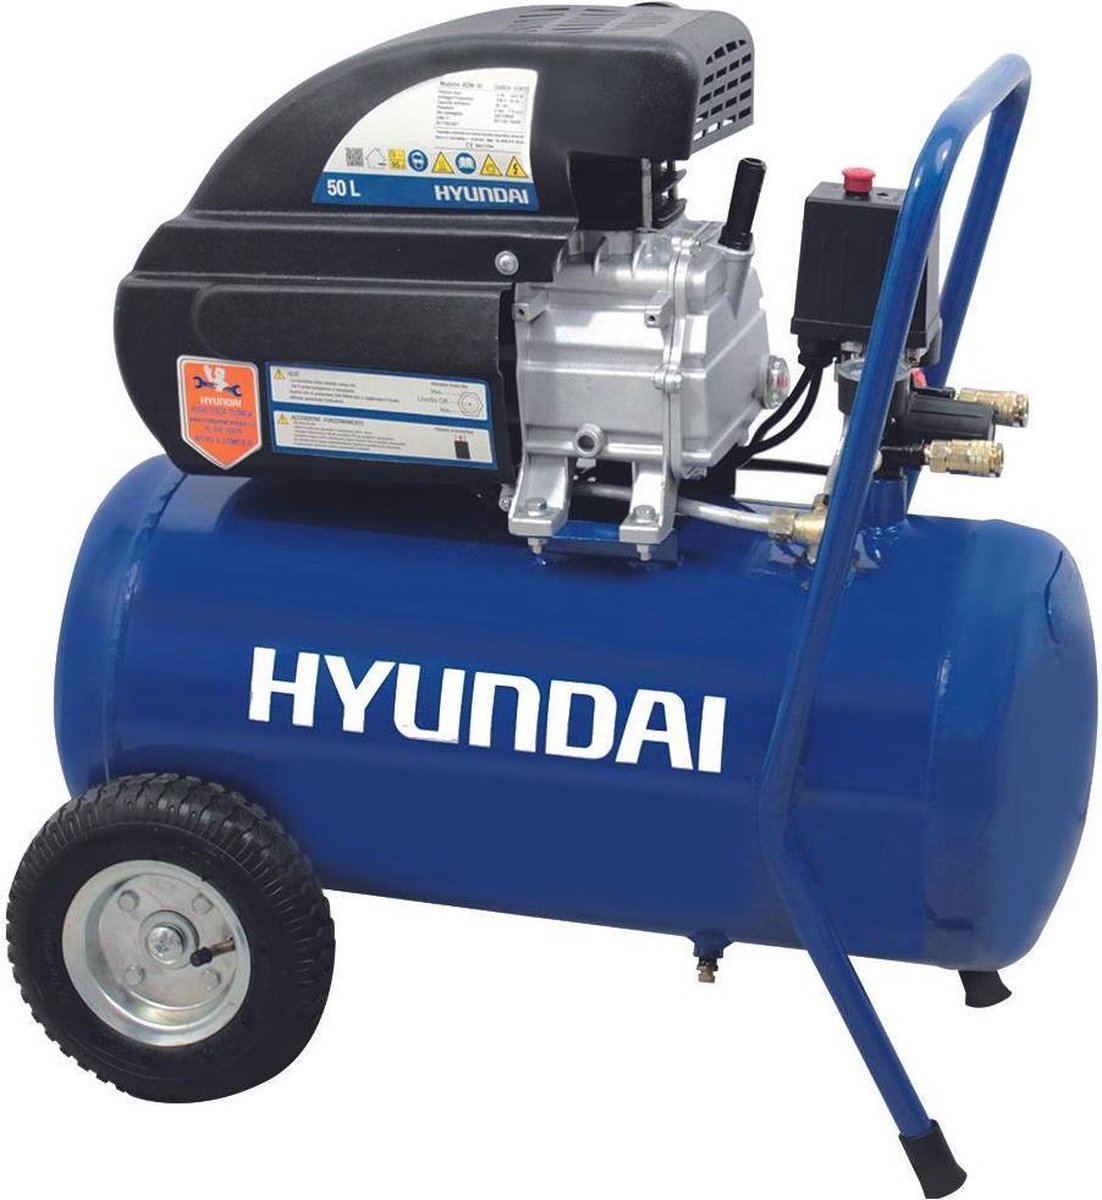 Hyundai compressor verstevigd 50L 8 bar / lucht compressor / bandenpomp / banden pomp / oppompen / pneunmatisch aandrijven / schoonblazen